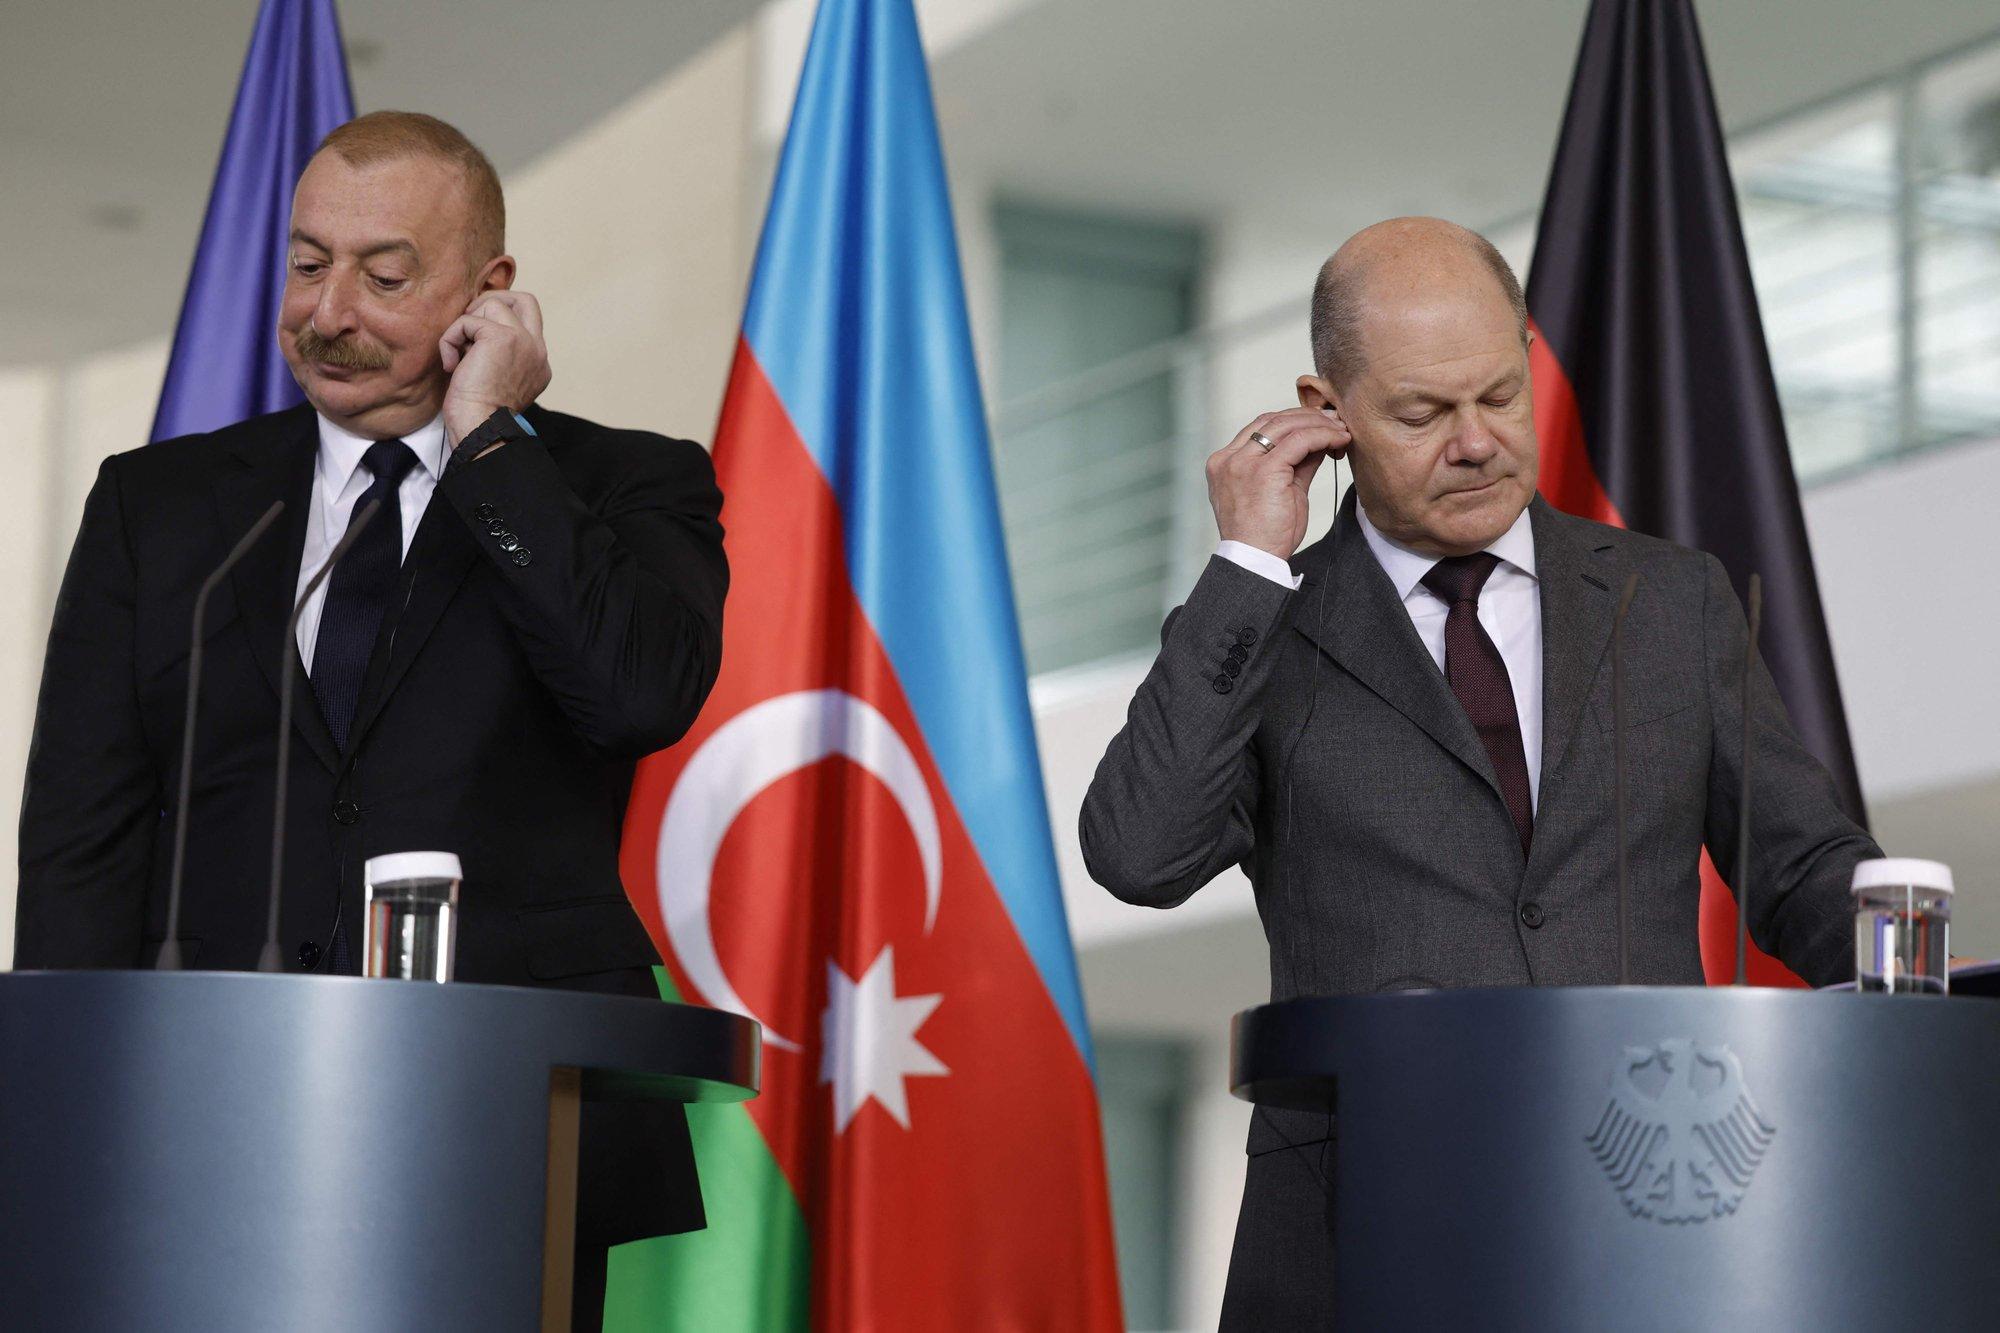 Olafas Scholzas susitiko su Azerbaidžano prezidentu Ilhamu Alijevu